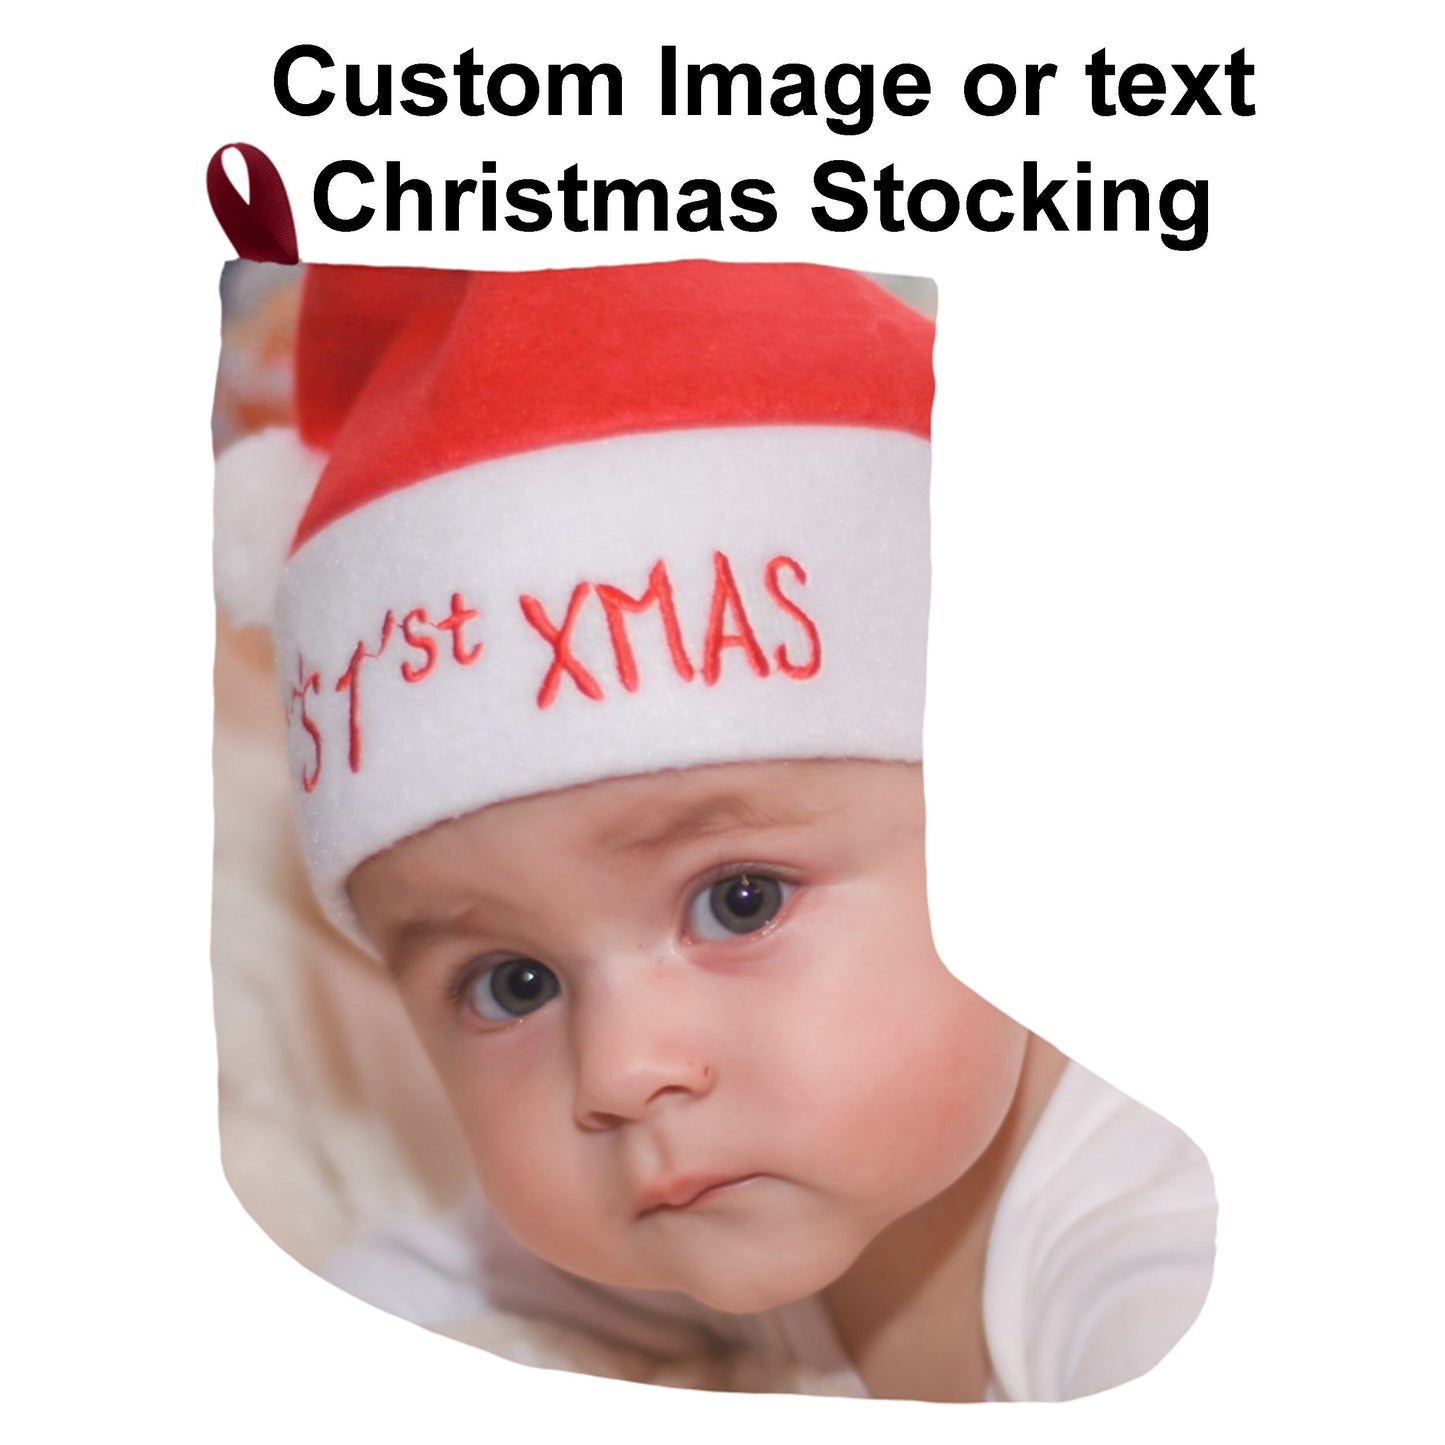 Custom christmas stocking photo stockings personalized xmas stocking image stocking personalised stockings customized stocking custom image